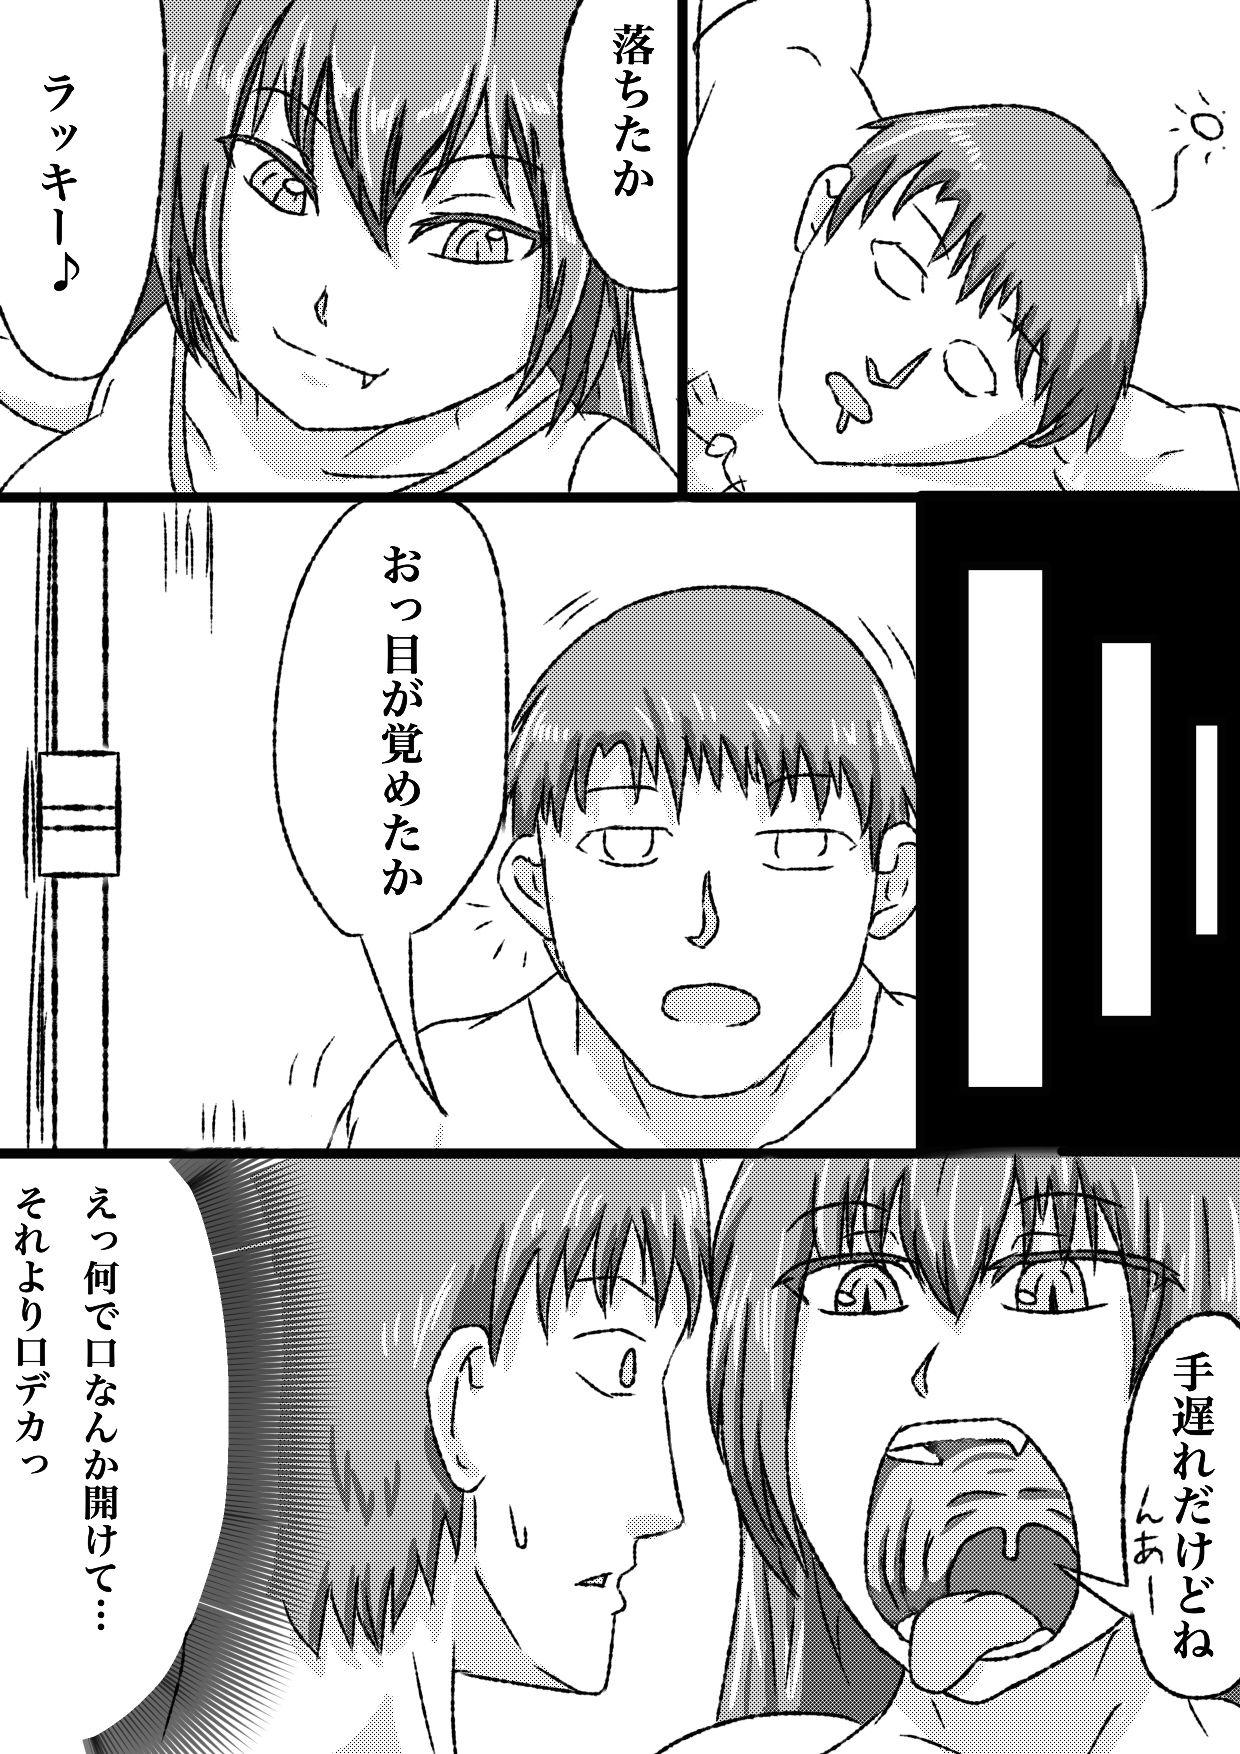 Ink uchi no ko marunomi manga - Original Arrecha - Page 4